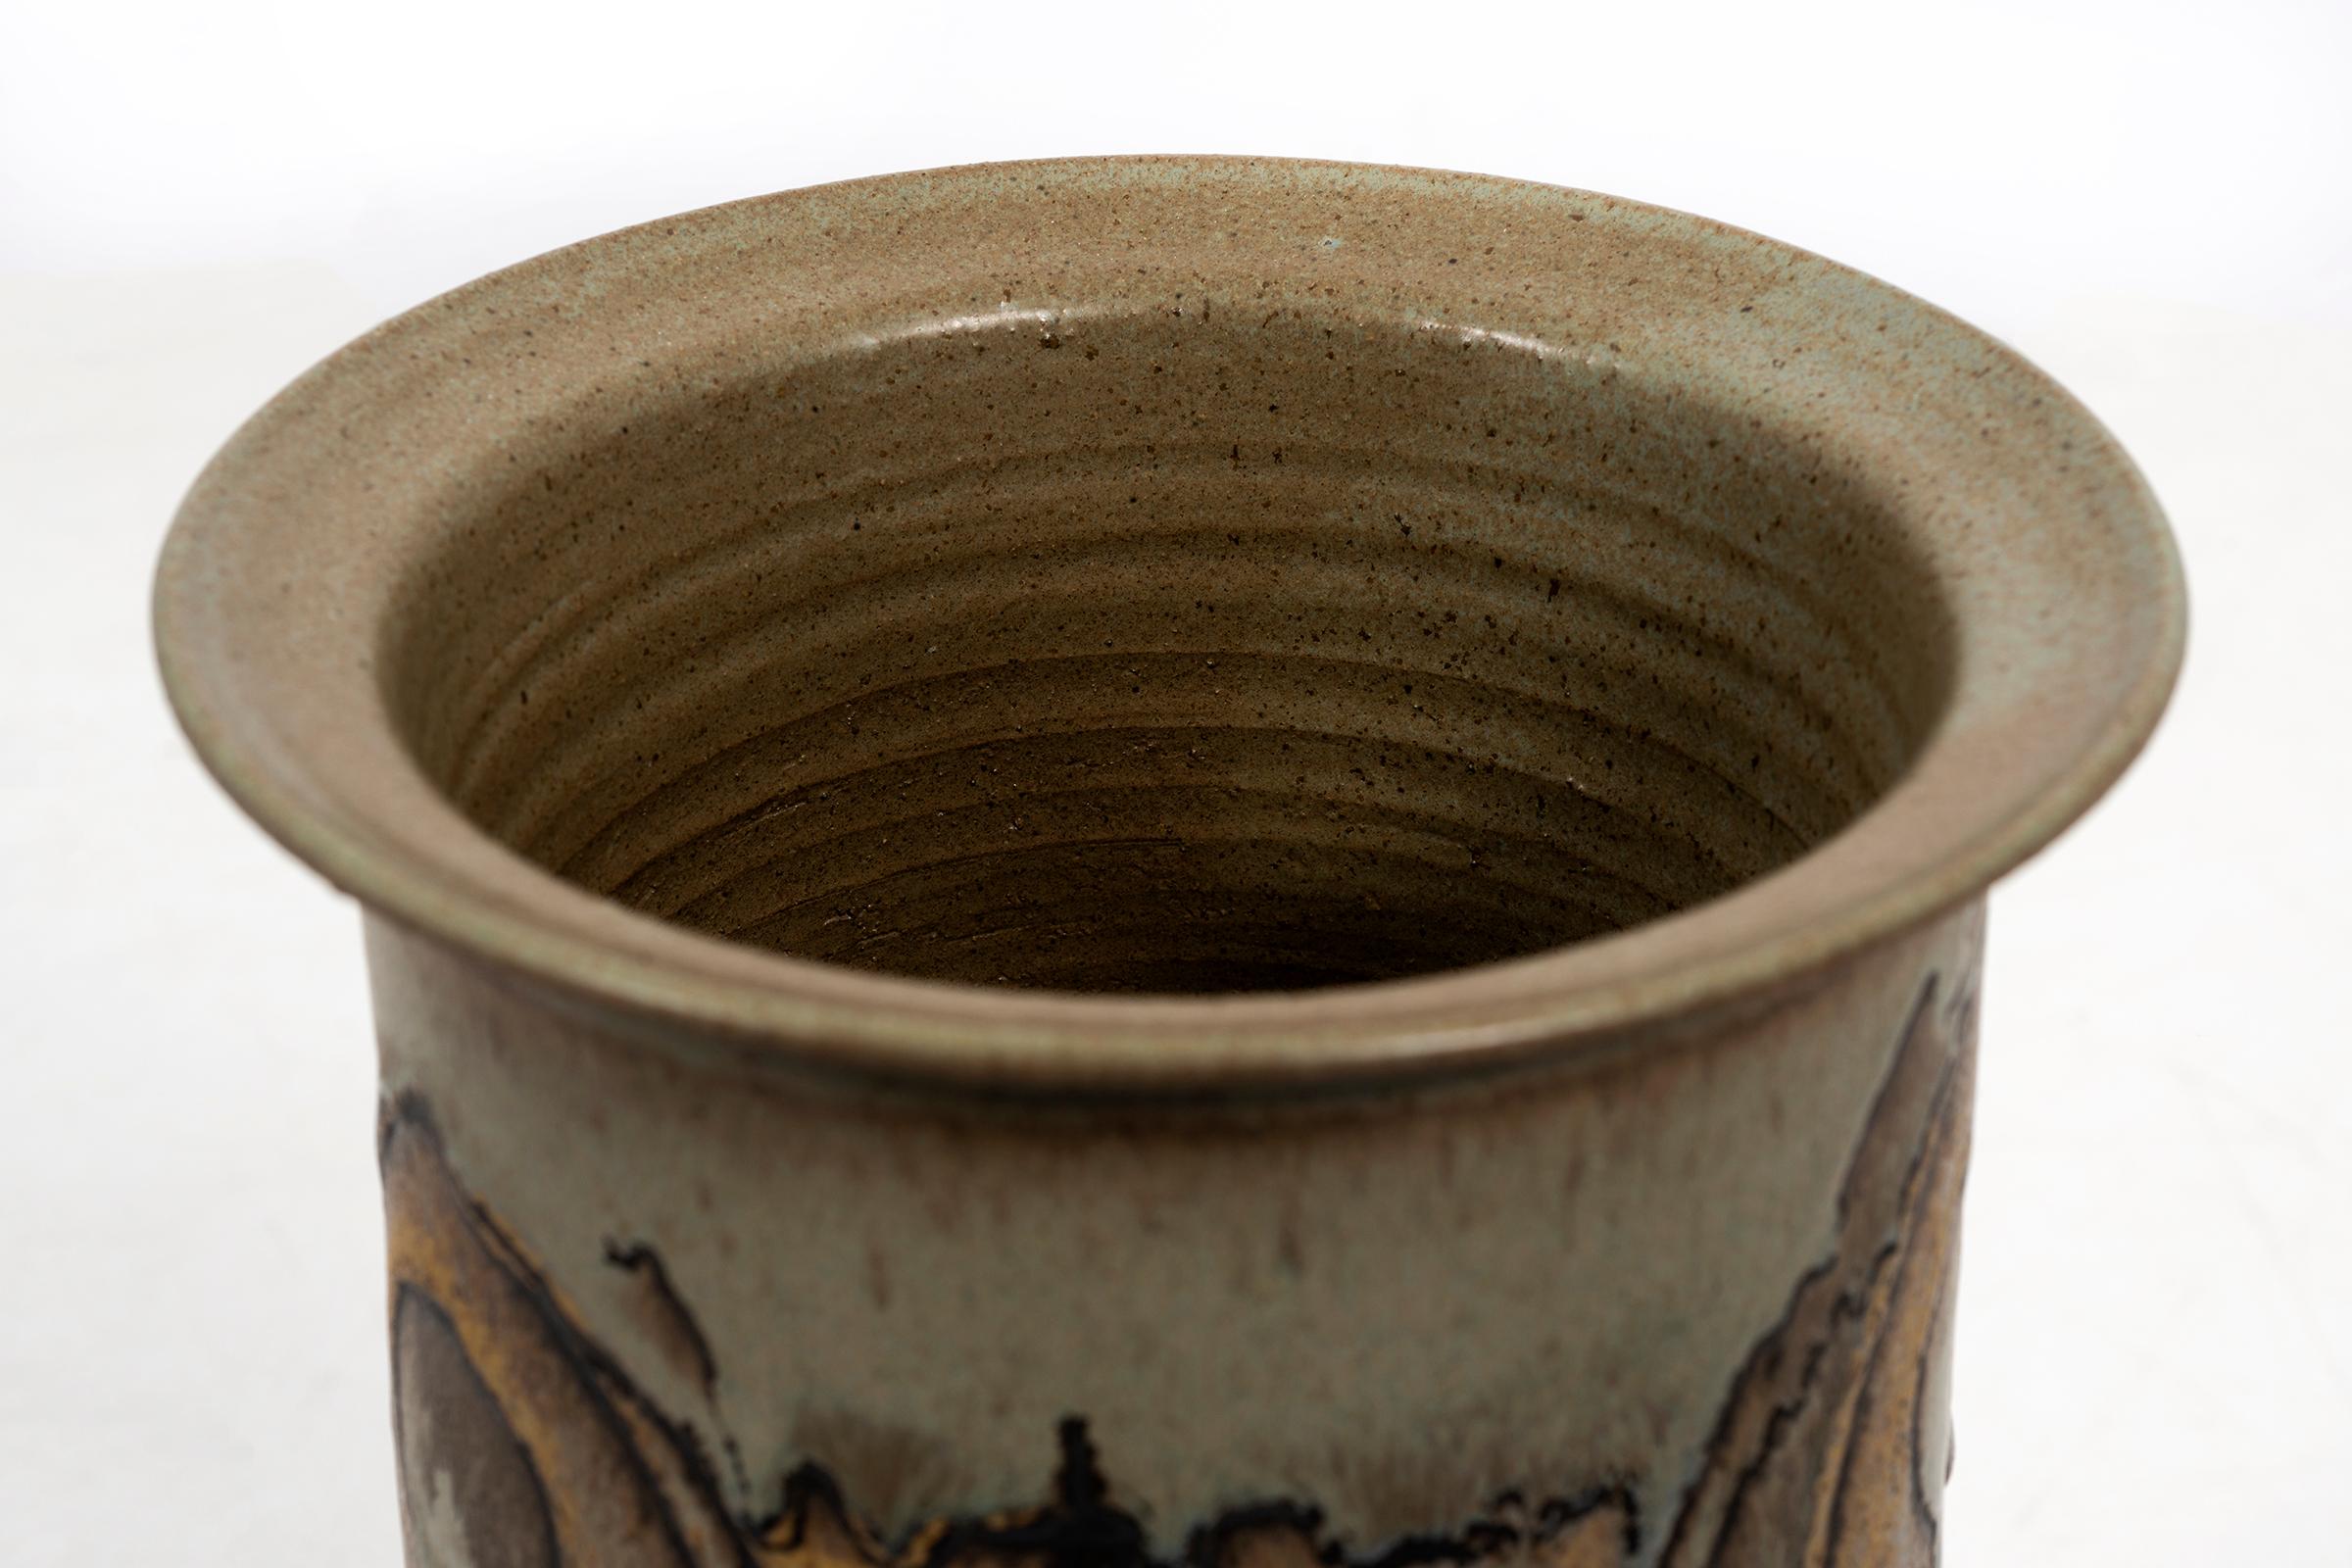 American Clyde Burt Ceramic Vase